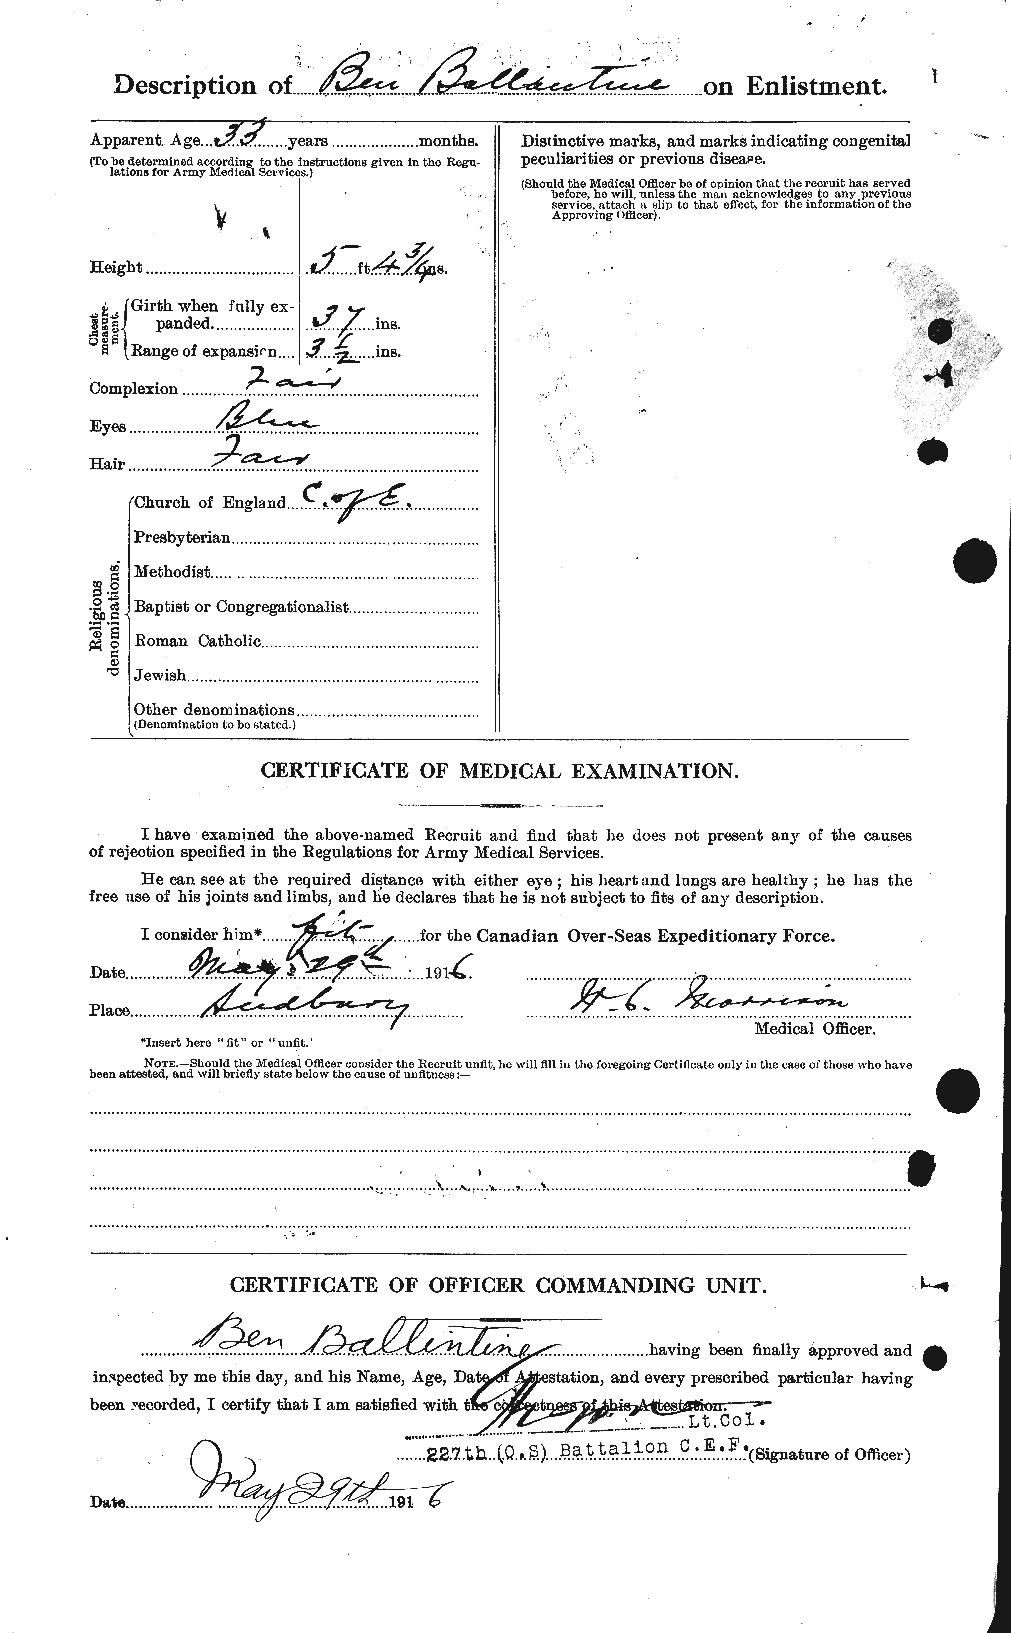 Dossiers du Personnel de la Première Guerre mondiale - CEC 219631b